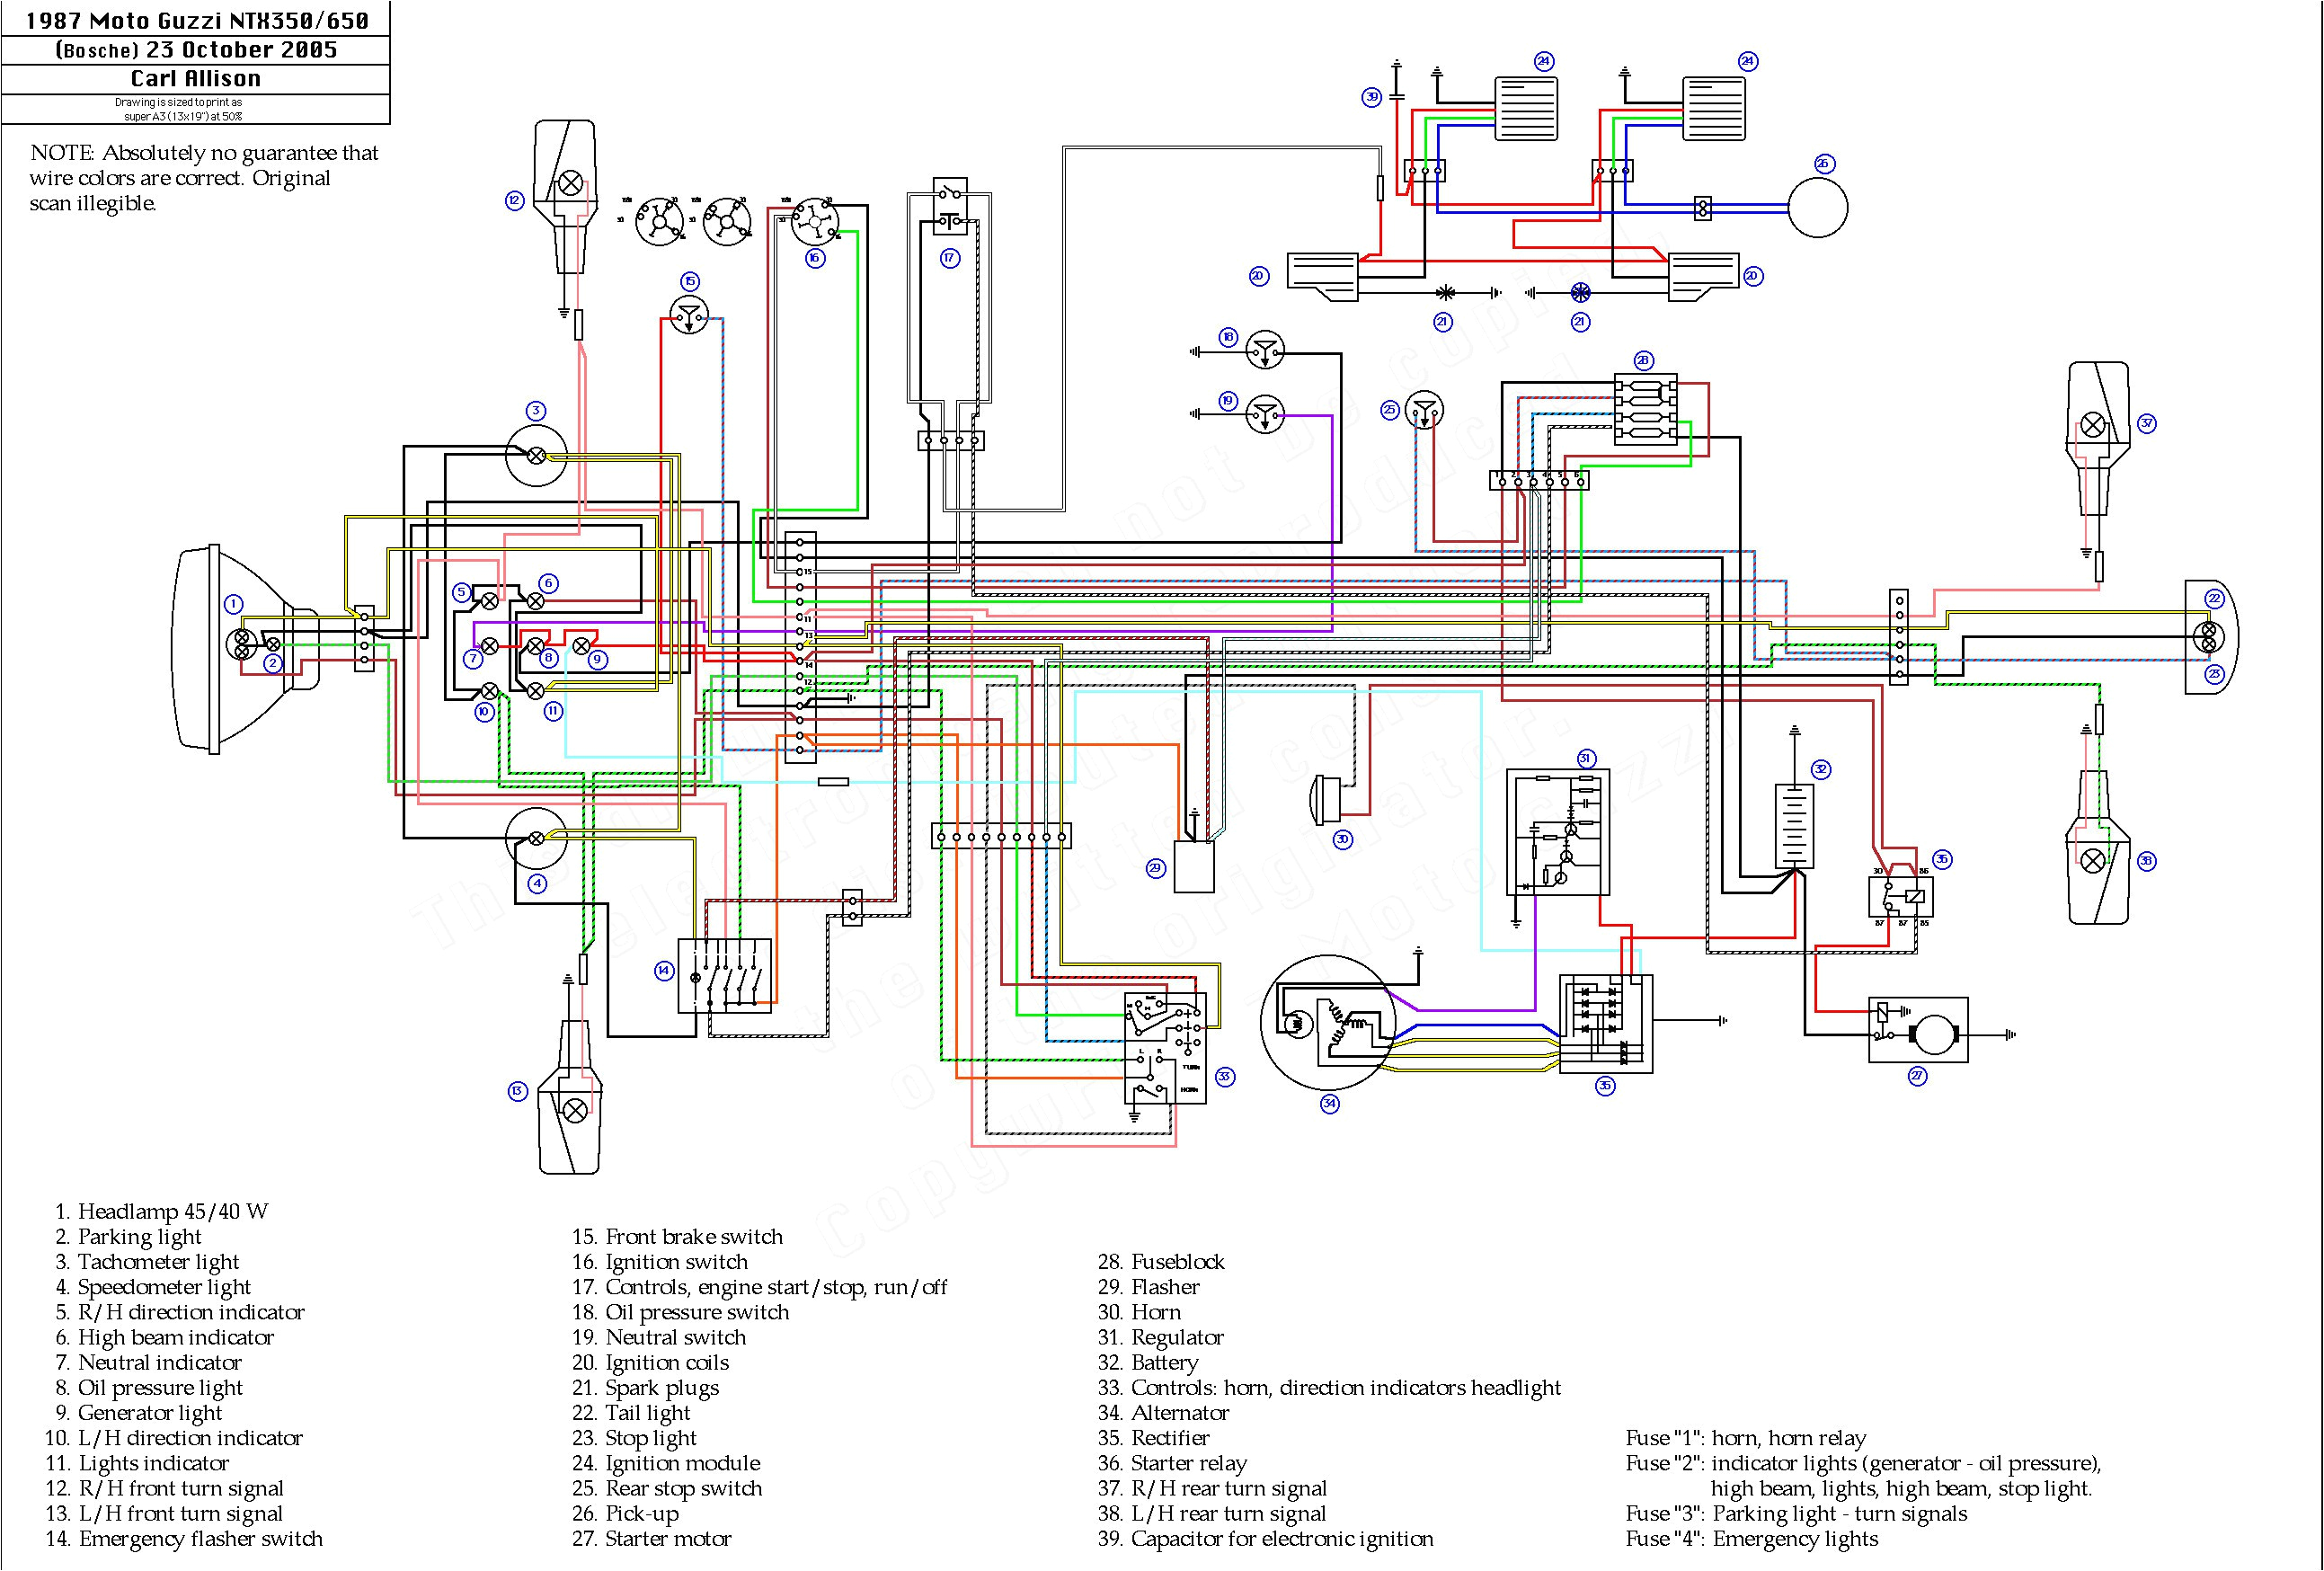 wiring diagram yamaha x ride wiring diagram number wiring diagram yamaha x ride